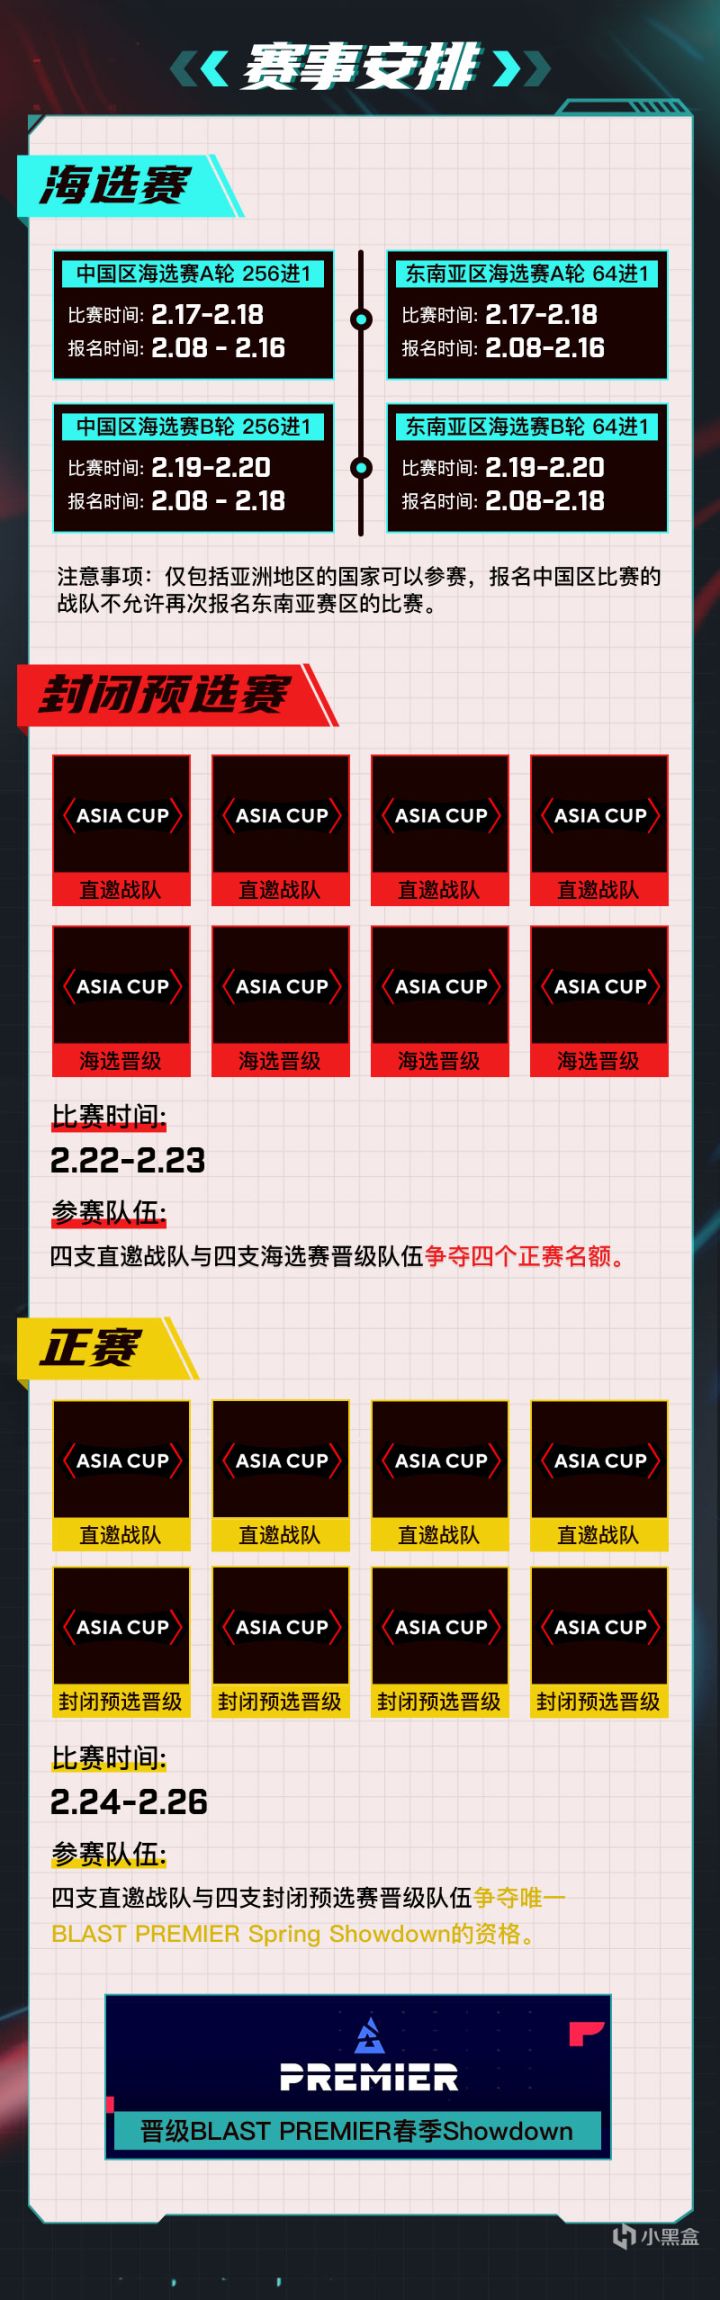 【CS:GO】5E对战平台 BLAST亚洲预选赛报名正式开启-第1张